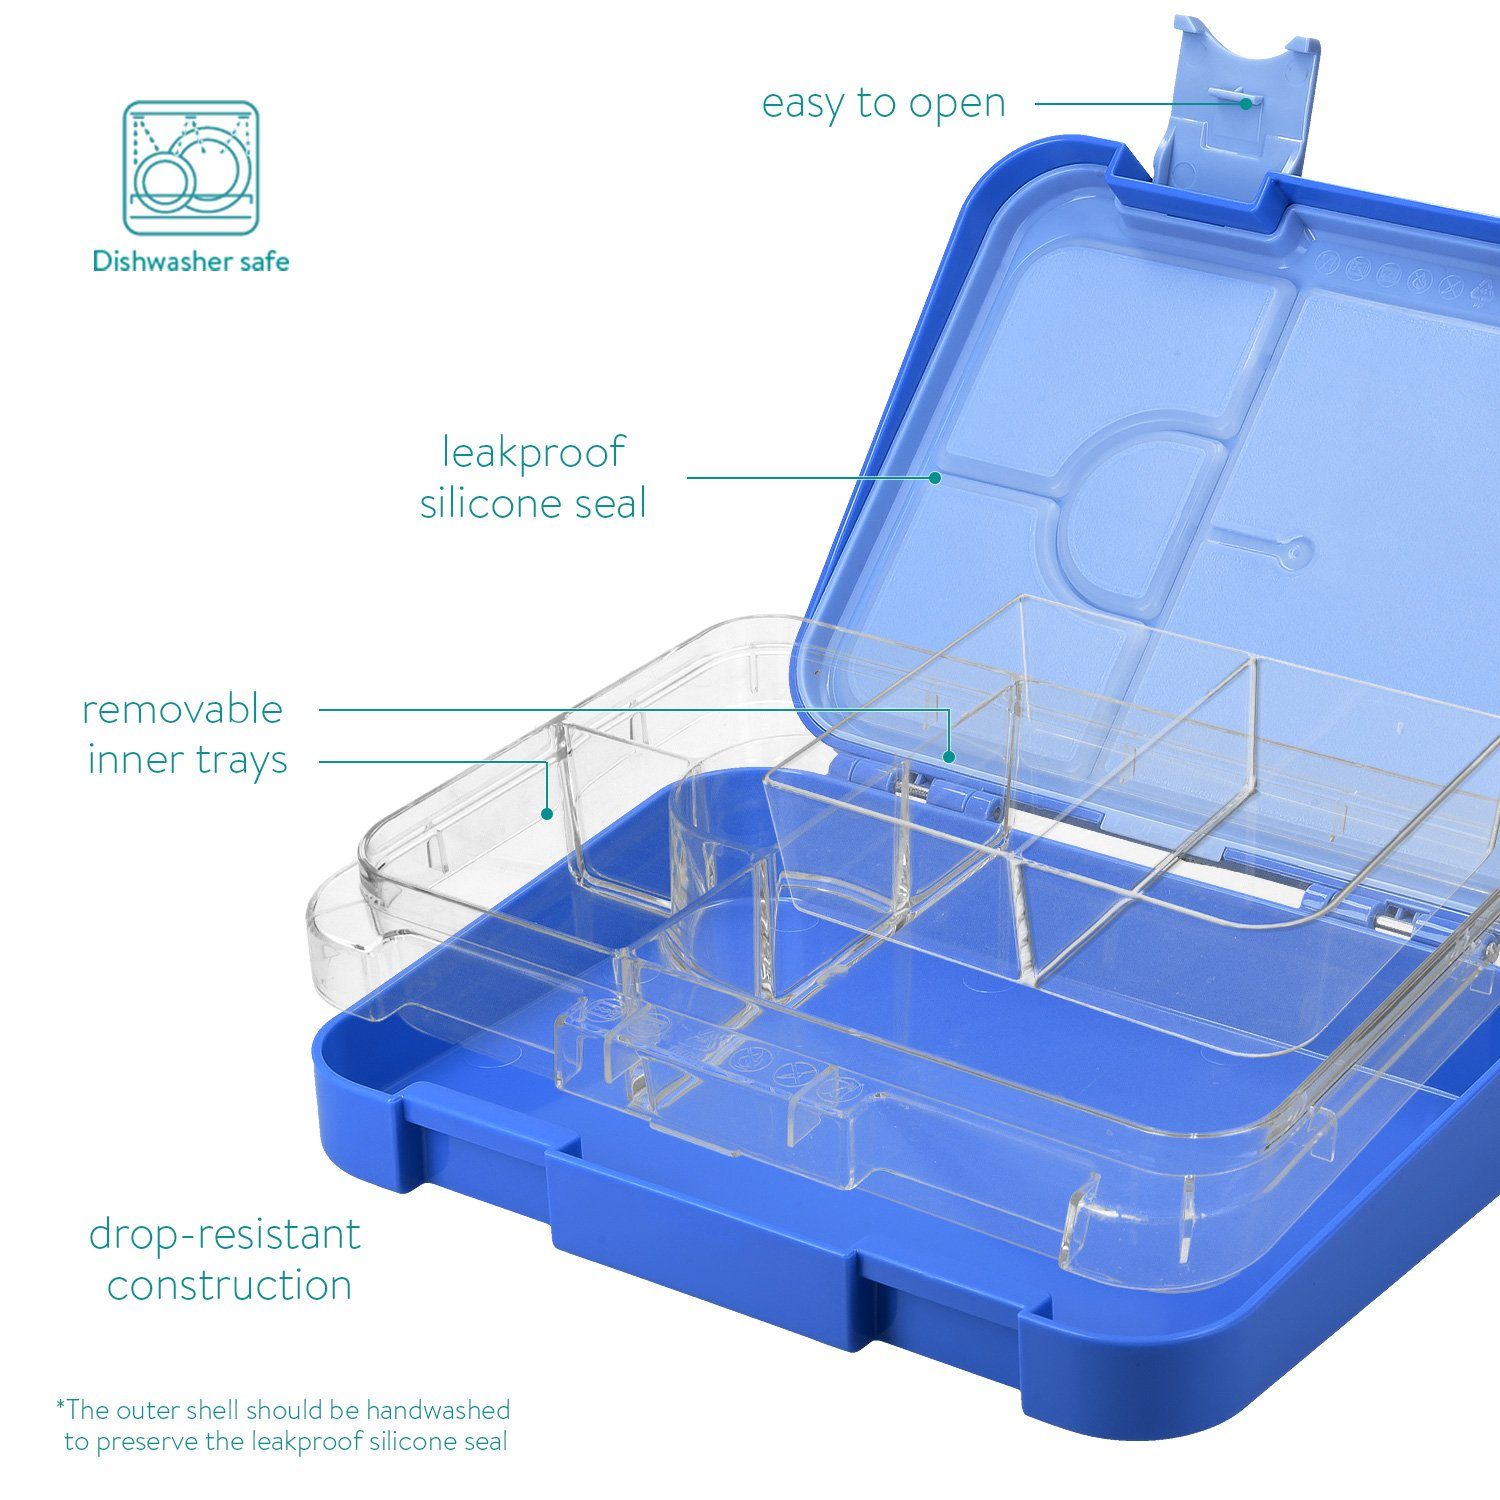 Bento Dunkelblau Lunchbox mit auslaufsicher Box - Navaris Lunch Fächern, Vesperbox Box Brotdose Kunststoff